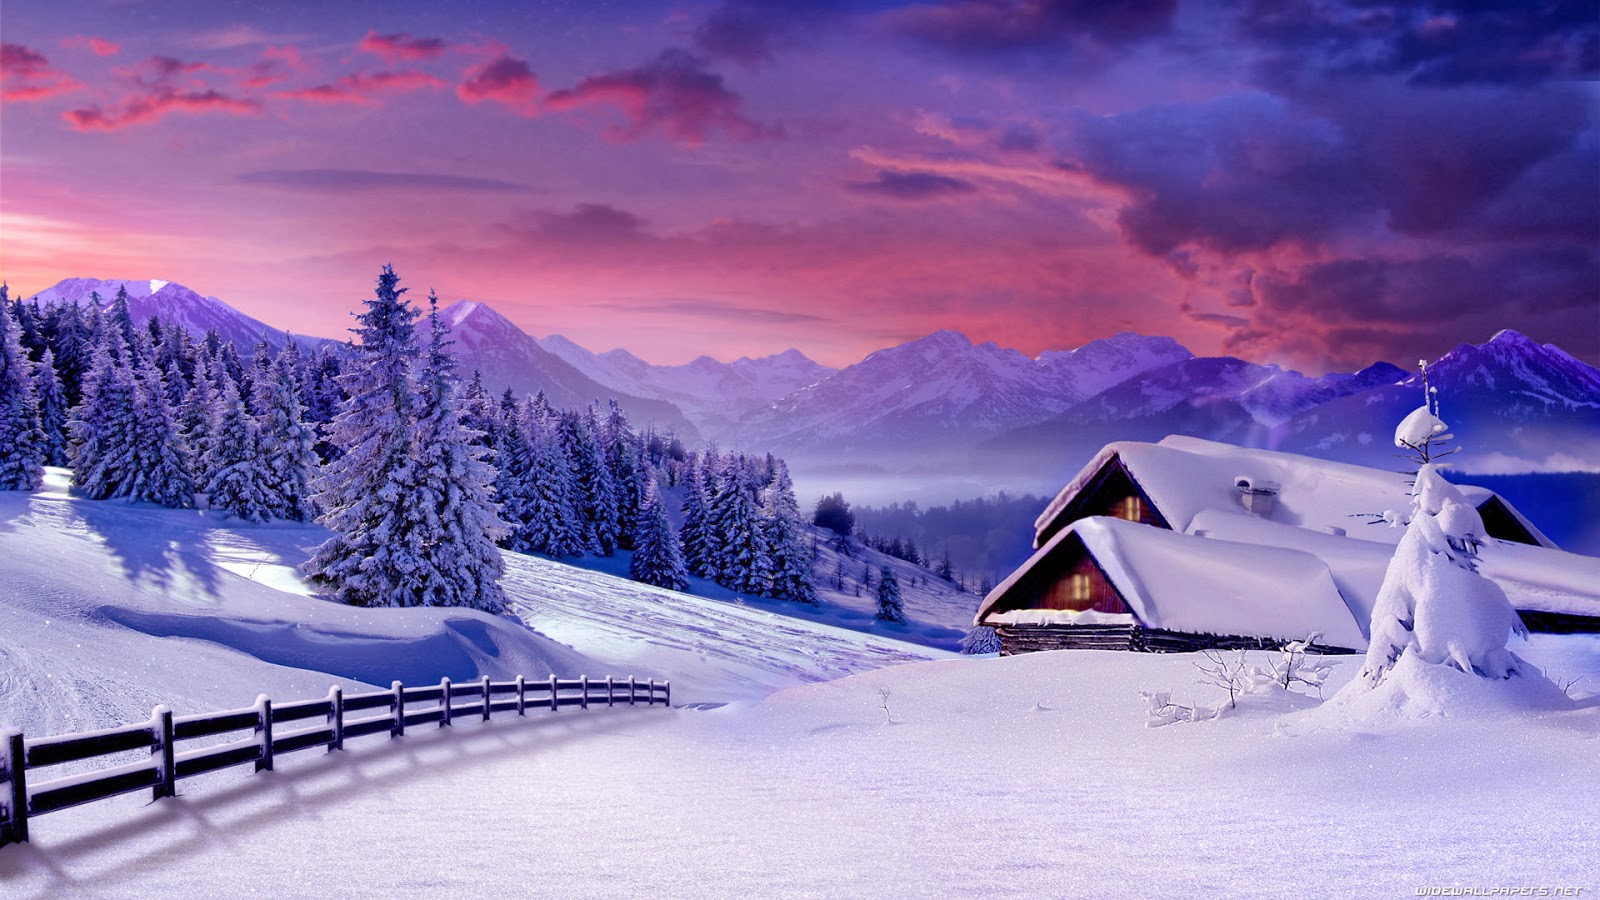 Winter Scenes Wallpaper Background